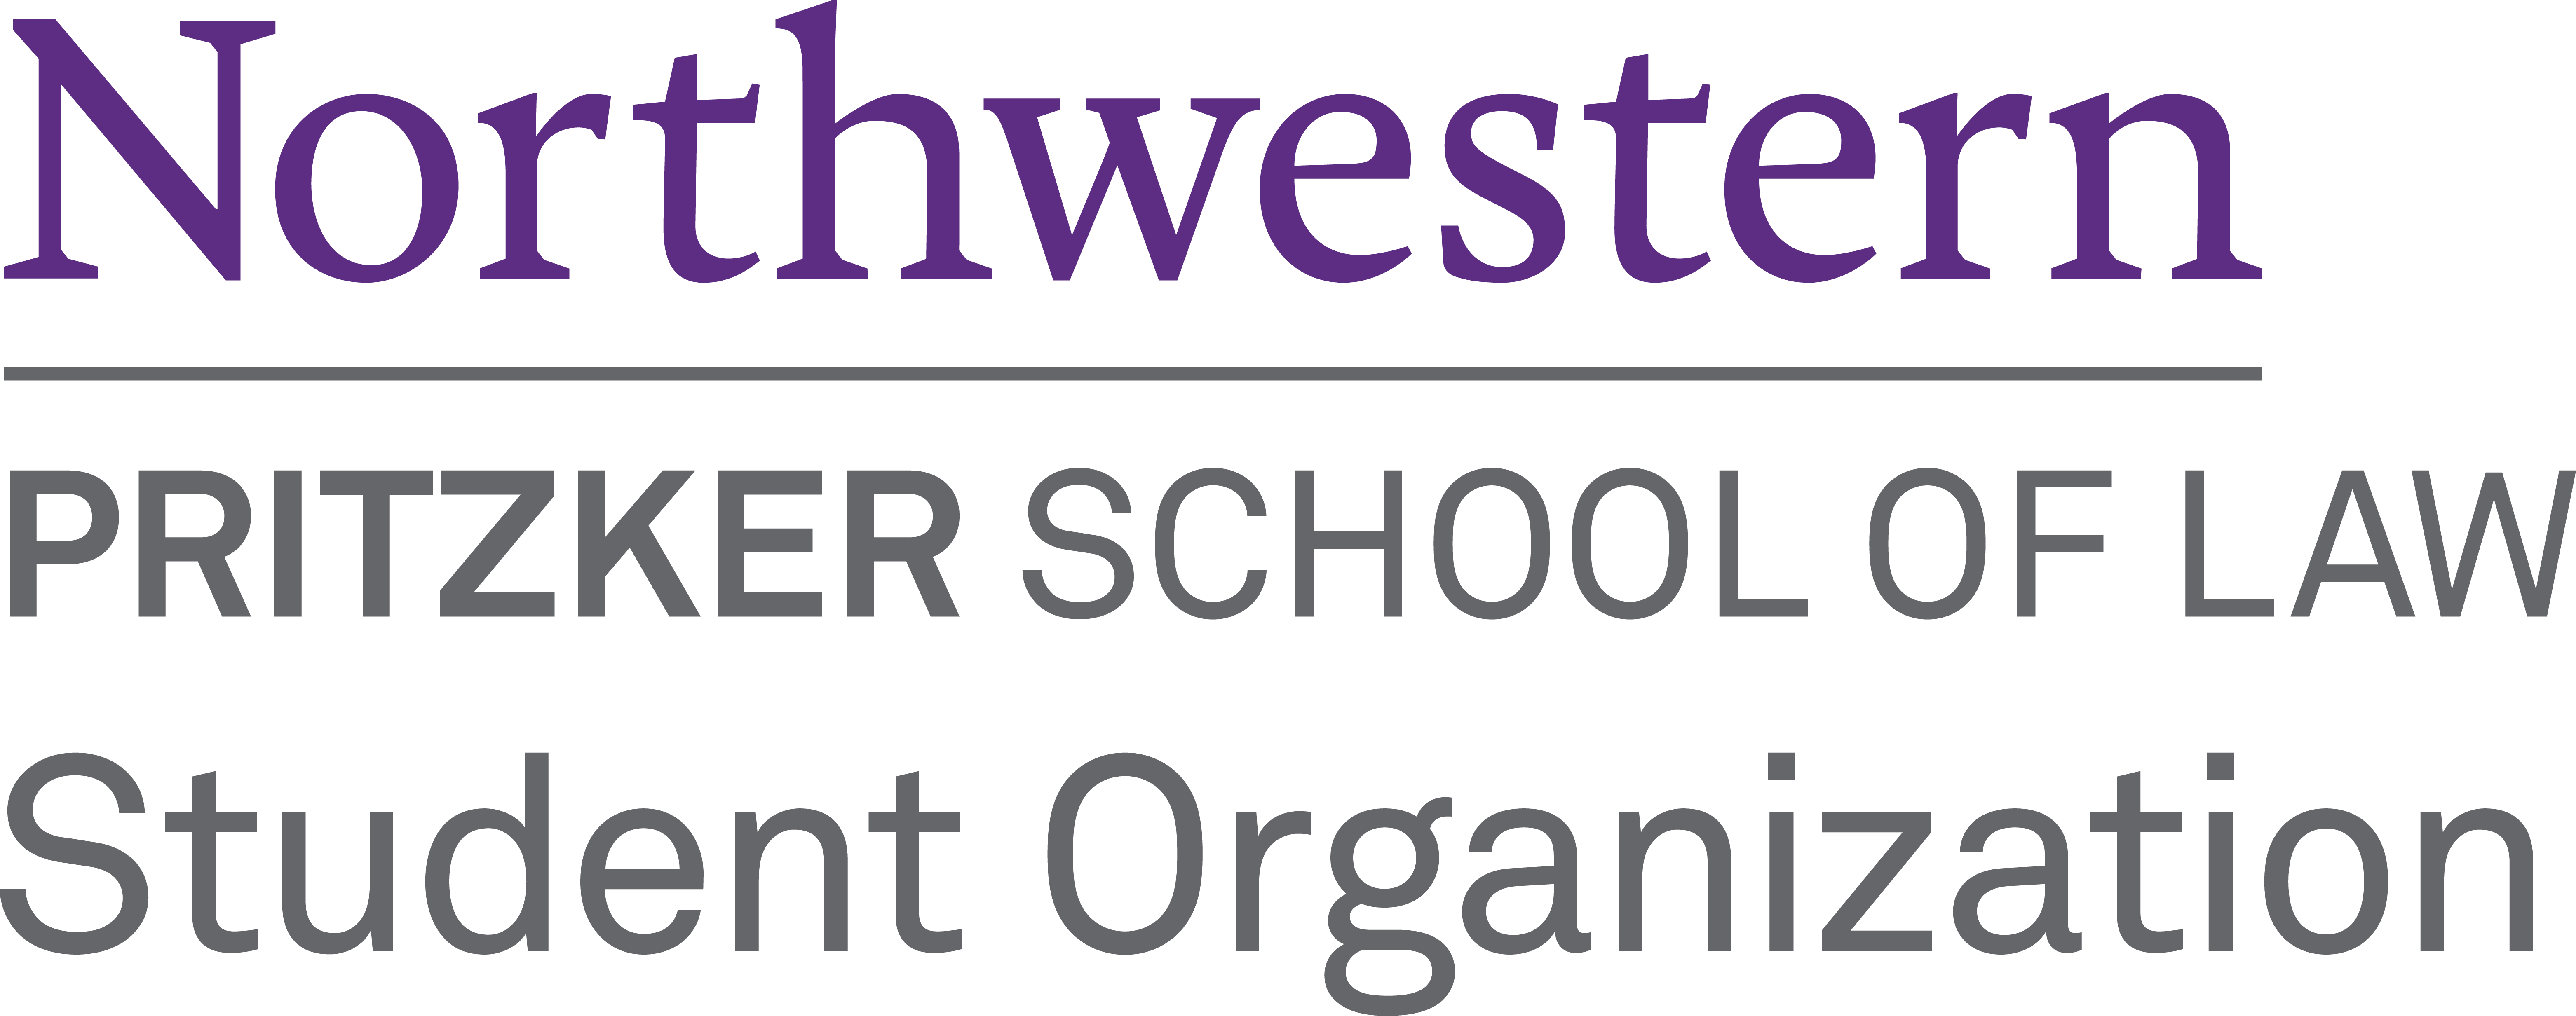 Northwestern Logo - Logos, Law School Life: Northwestern Pritzker School of Law